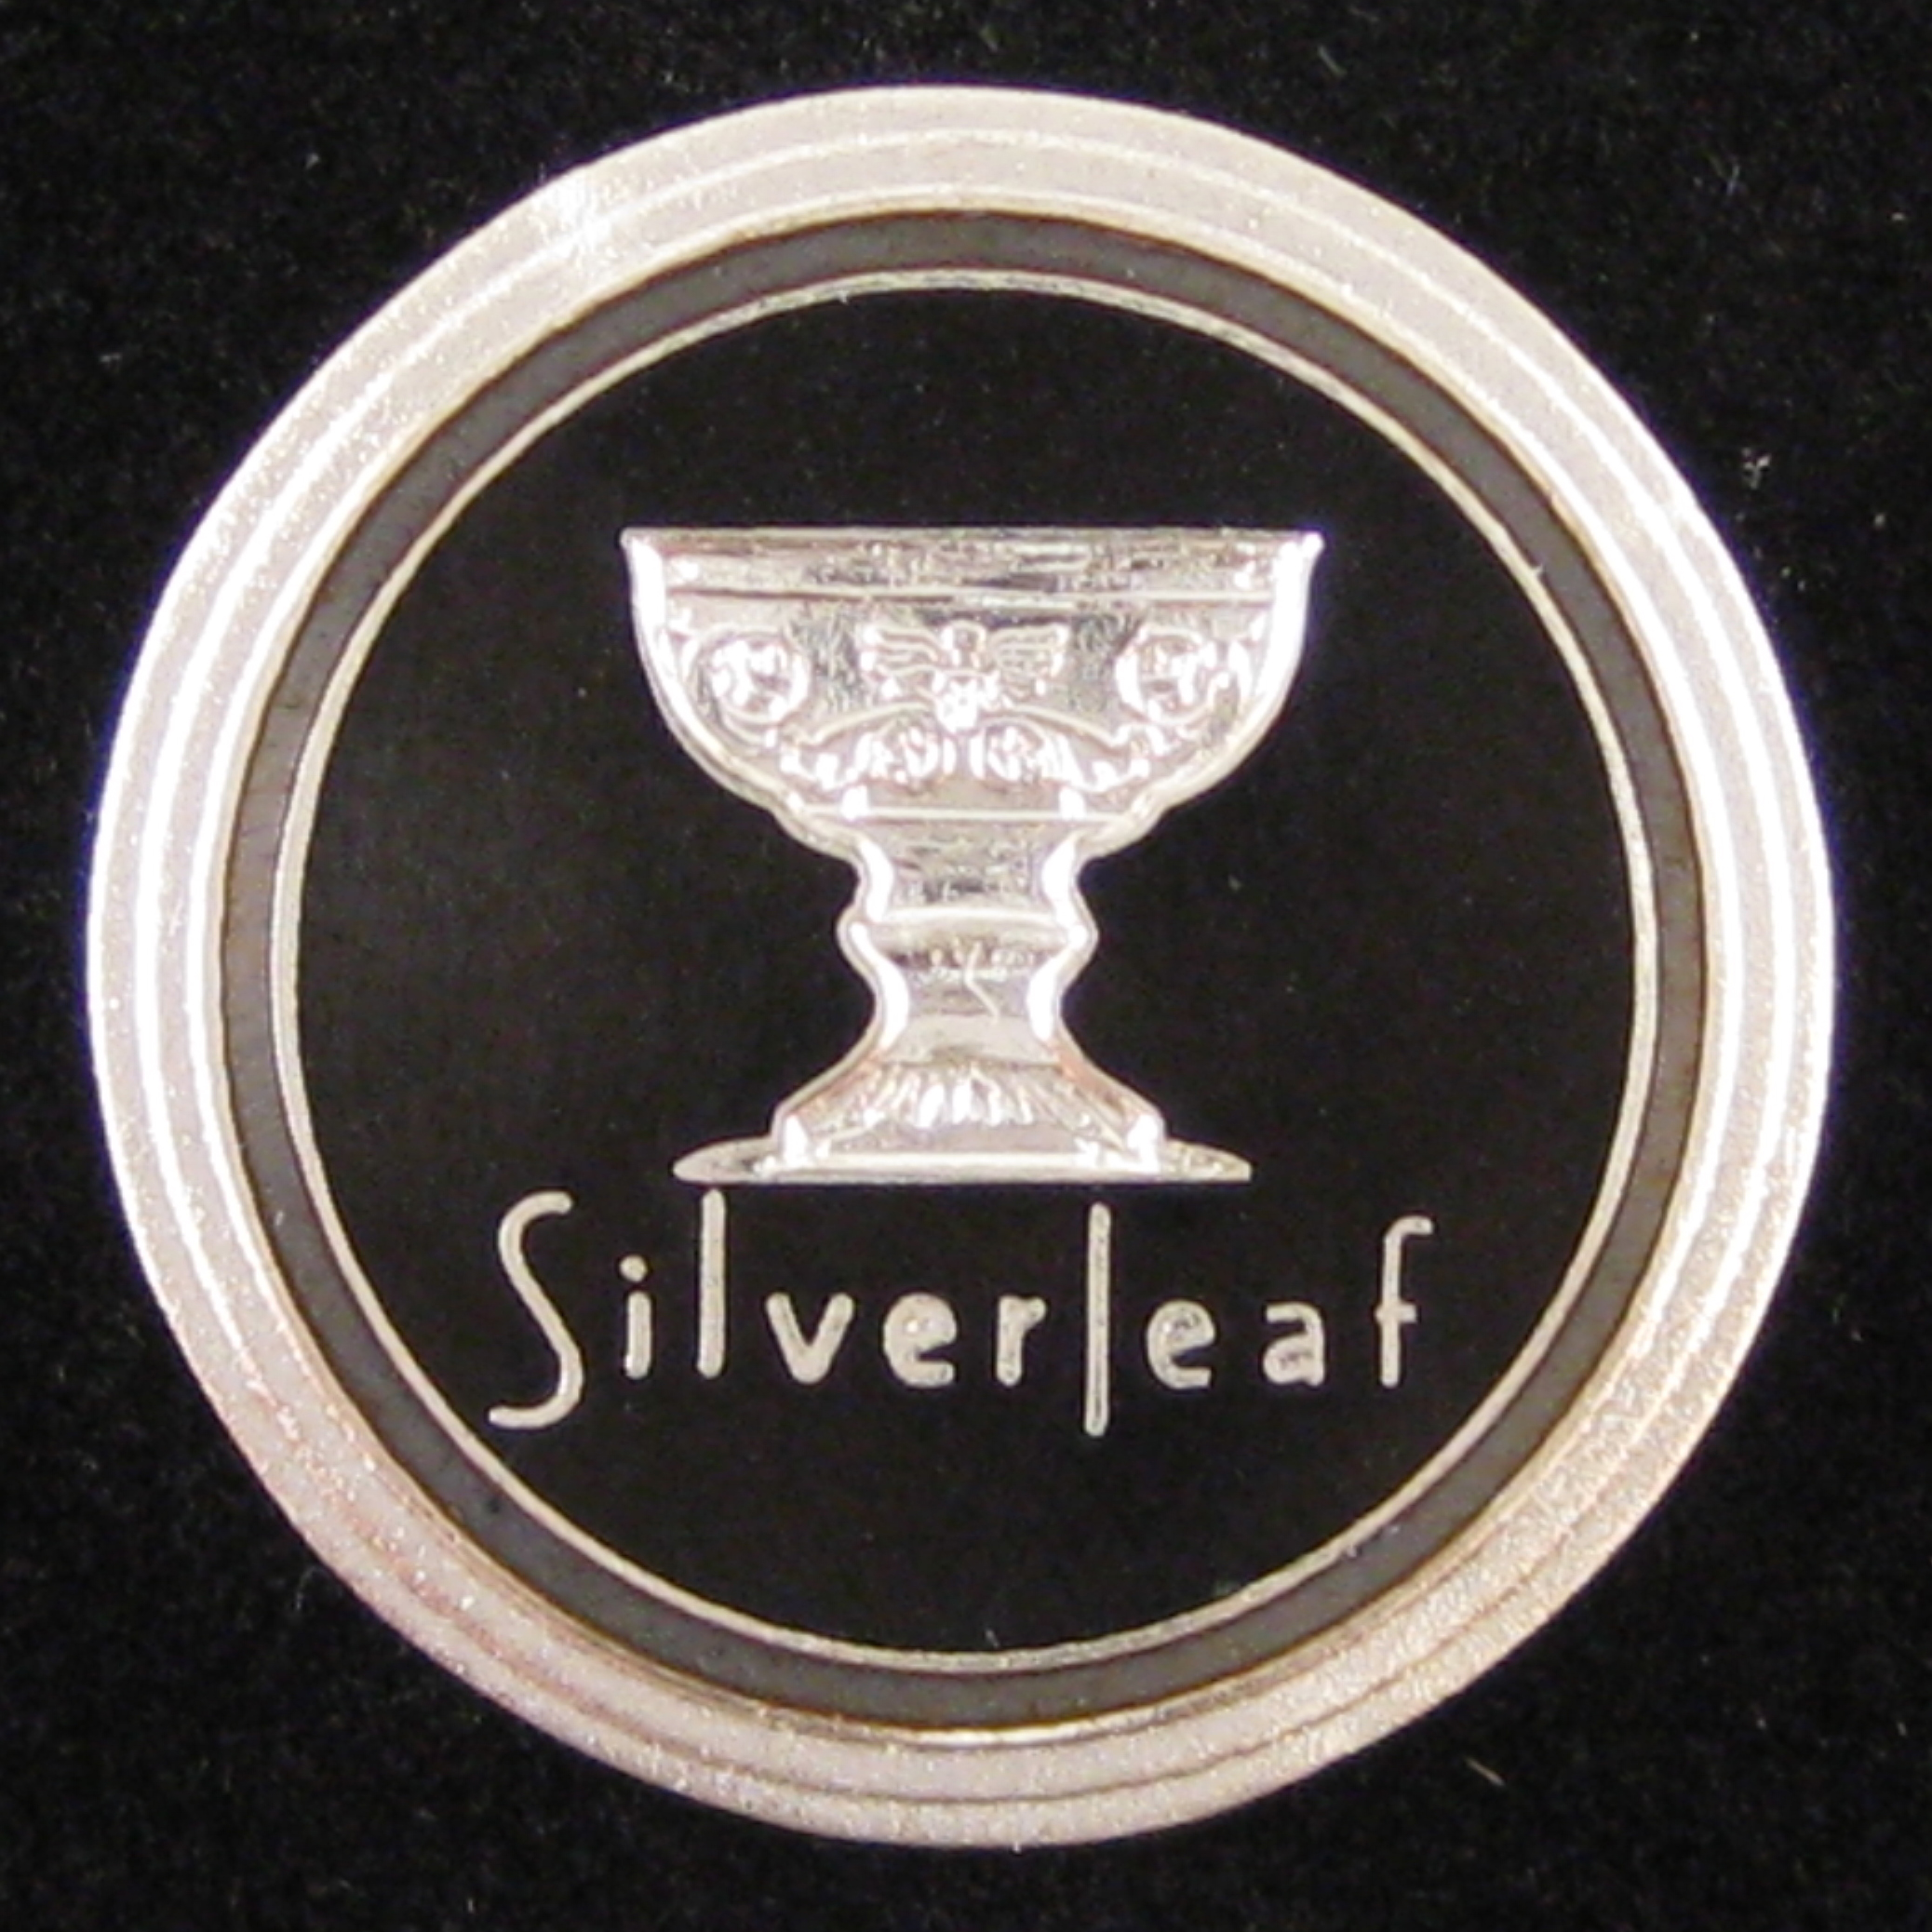 Silverleaf - Front Black